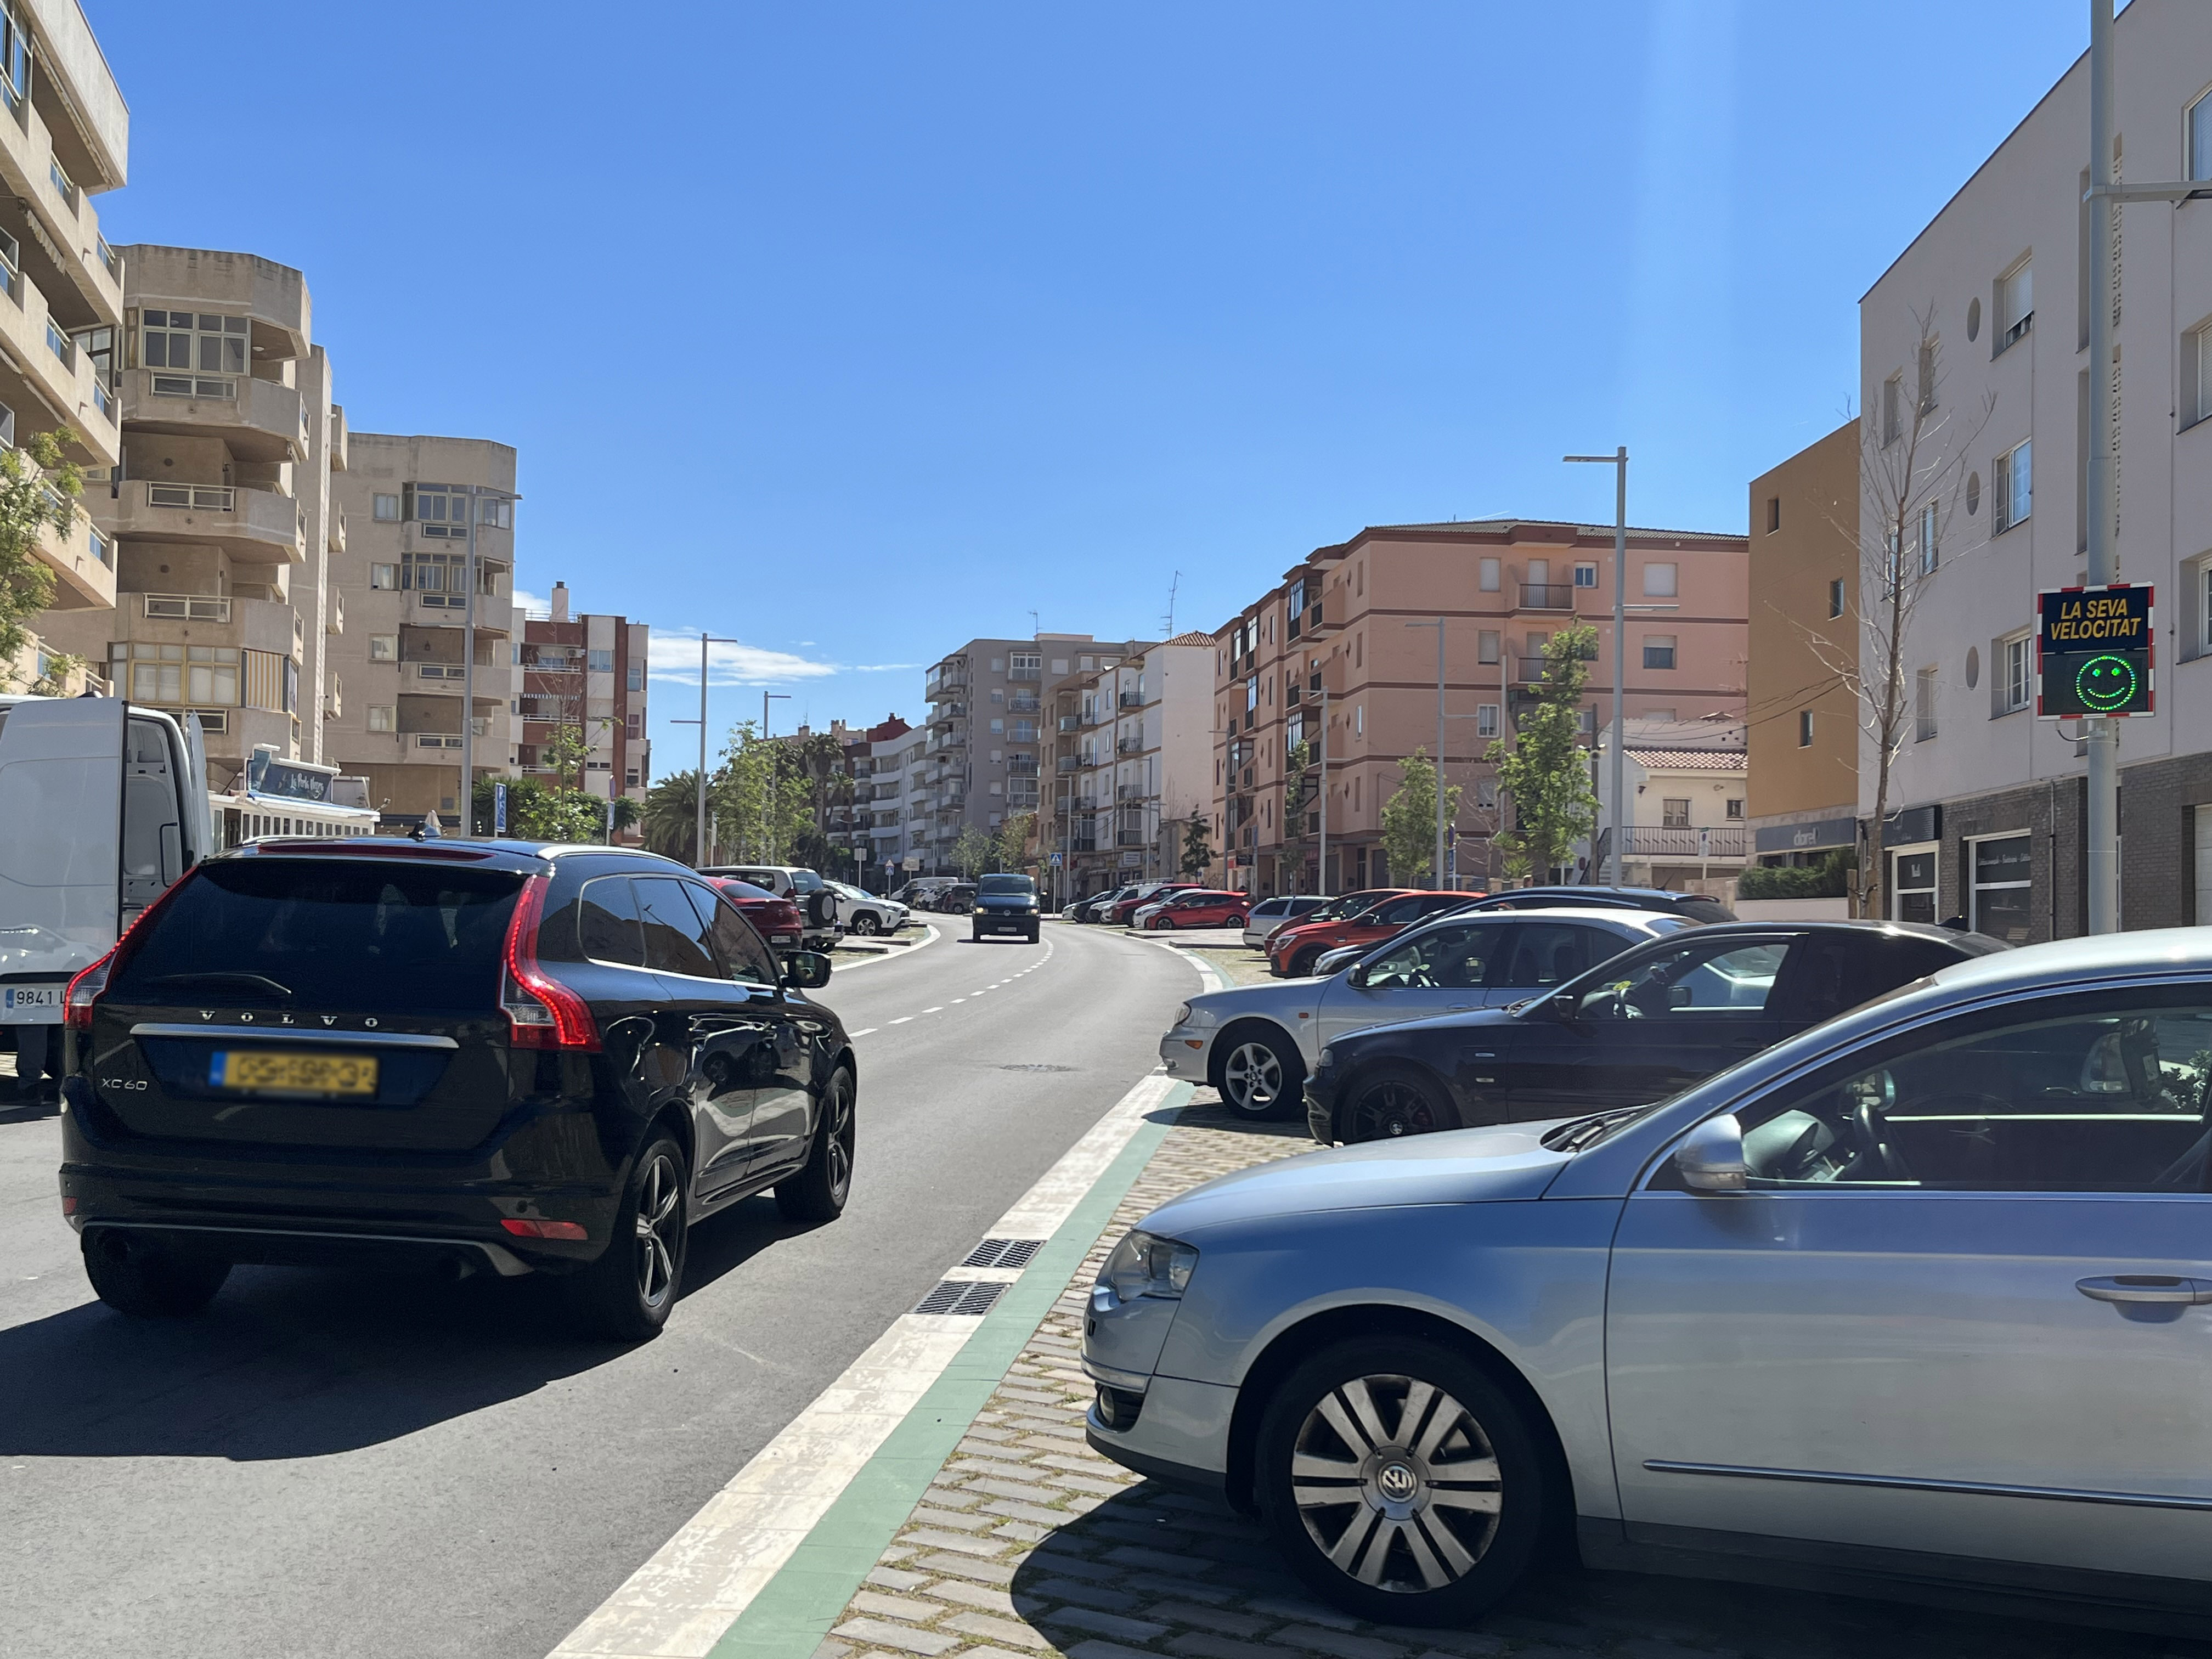 La Policia Local de Vandellòs i l’Hospitalet de l’Infant estudiarà la velocitat amb què circulen els vehicles a diversos punts del municipi